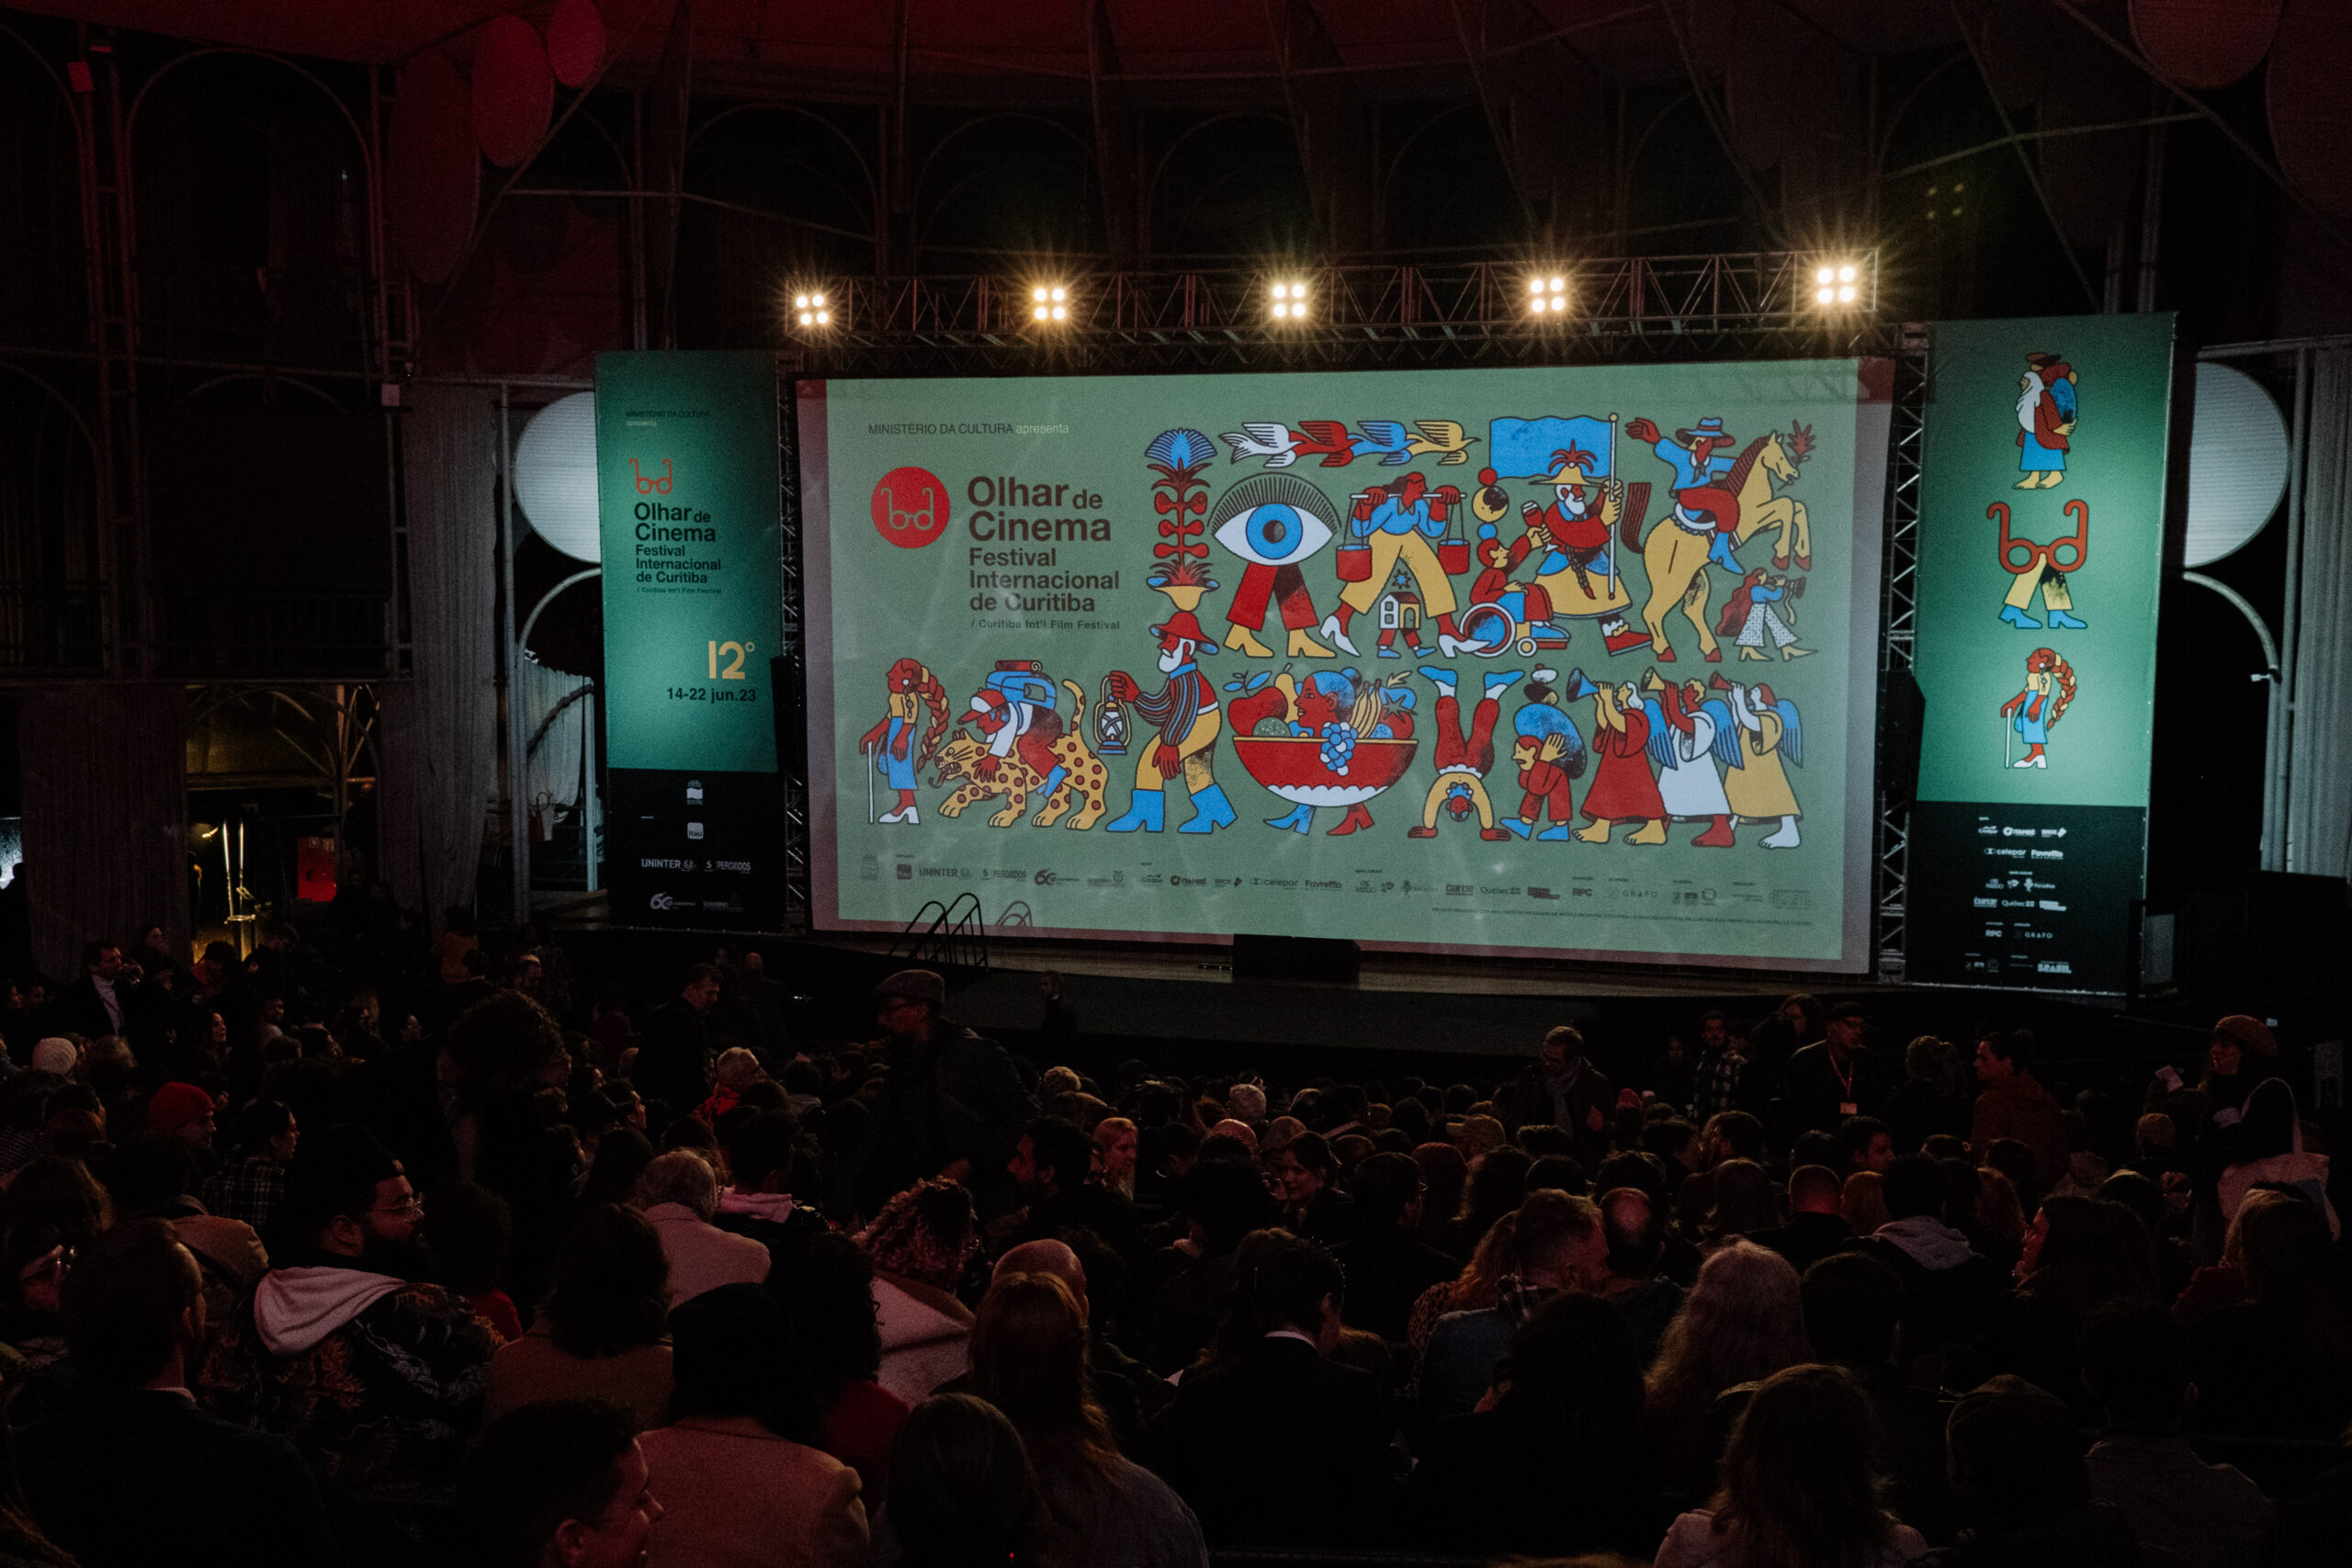 Olhar de Cinema - 13° edição do Festival Internacional de Curitiba revela programação.